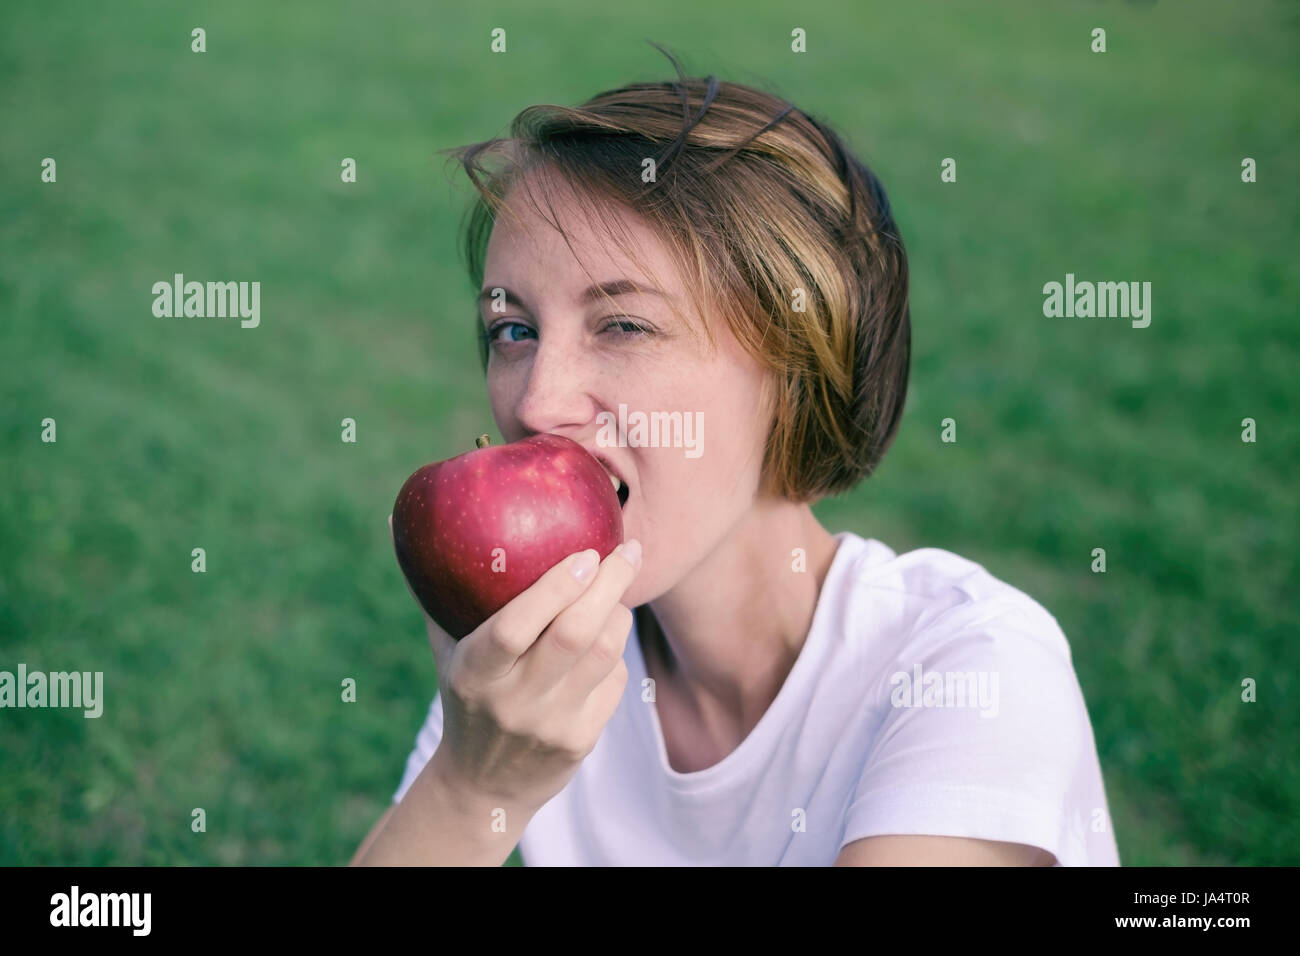 Molto bello il modello caucasico mangiare red apple nel parco. All'esterno ritratto di piuttosto giovane ragazza seduta su erba verde Foto Stock